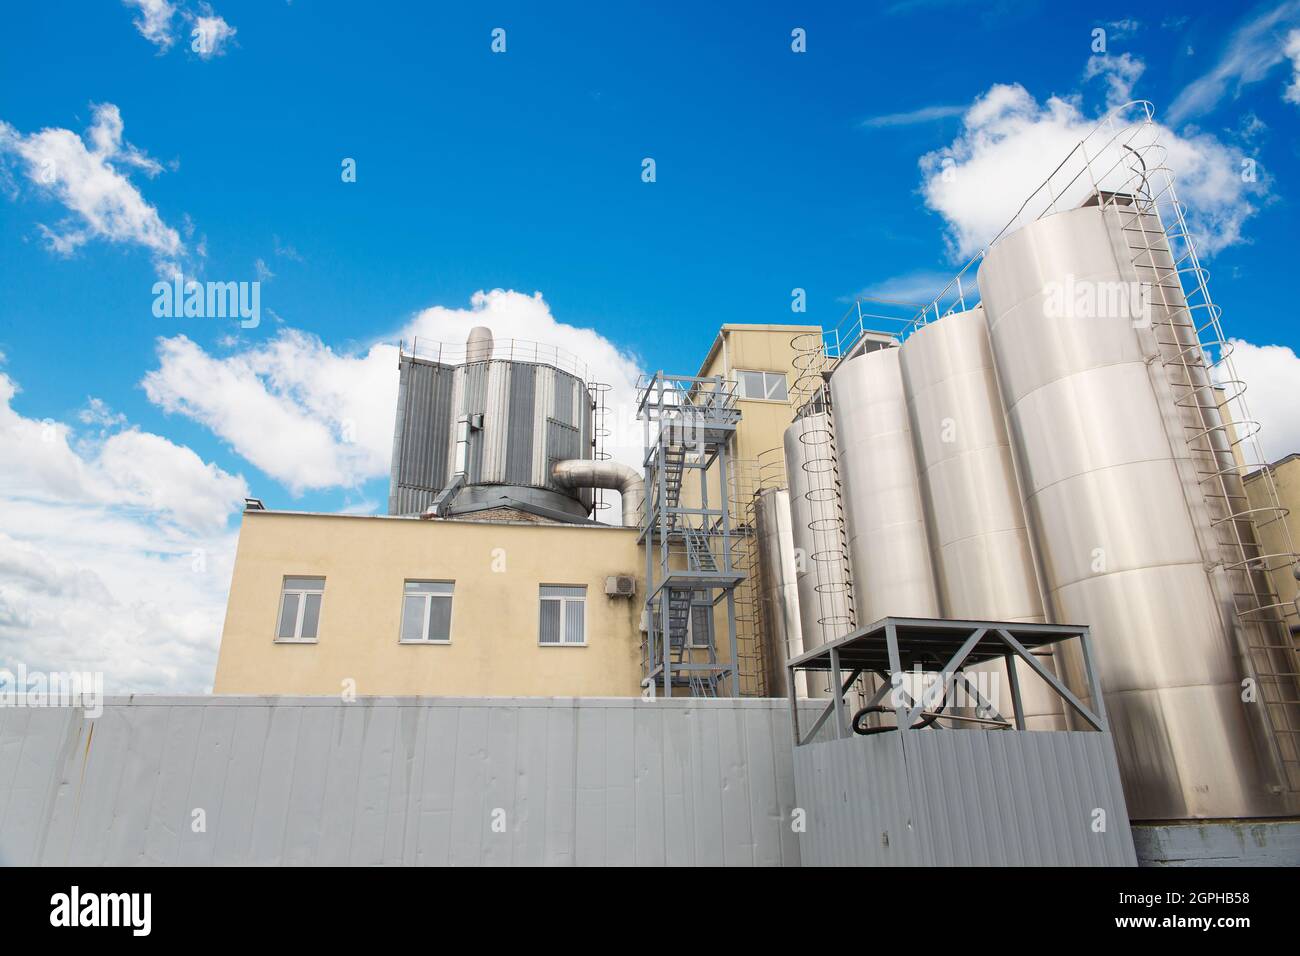 Attrezzatura del serbatoio contro il cielo nuvoloso blu. Industria alimentare o chimica. Produzione su impianto. Foto Stock